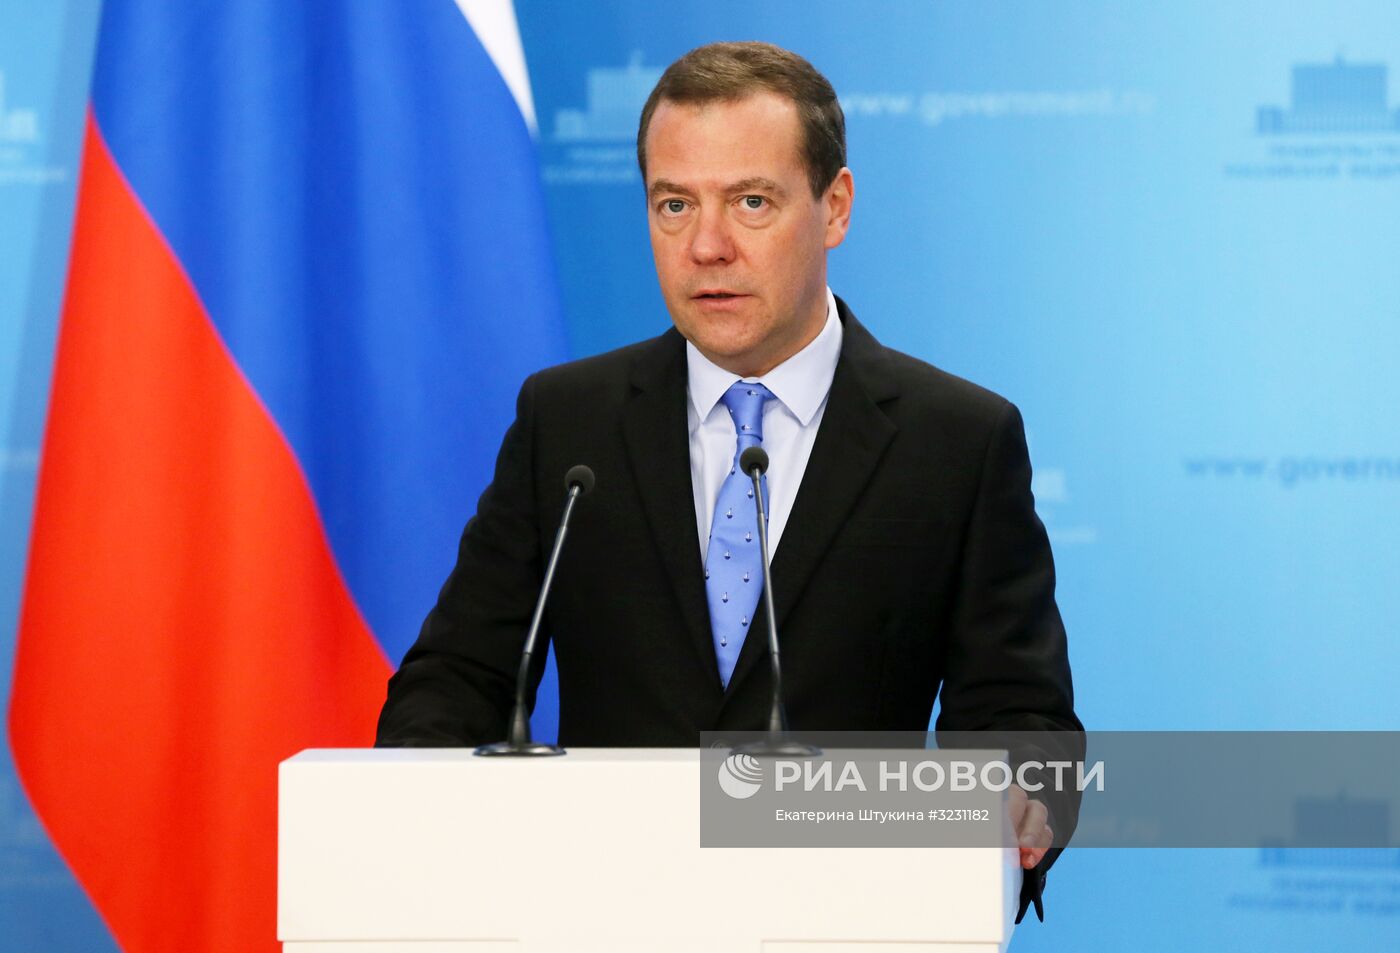 Премьер-министр РФ Д. Медведев вручил премии правительства РФ в области качества за 2017 год